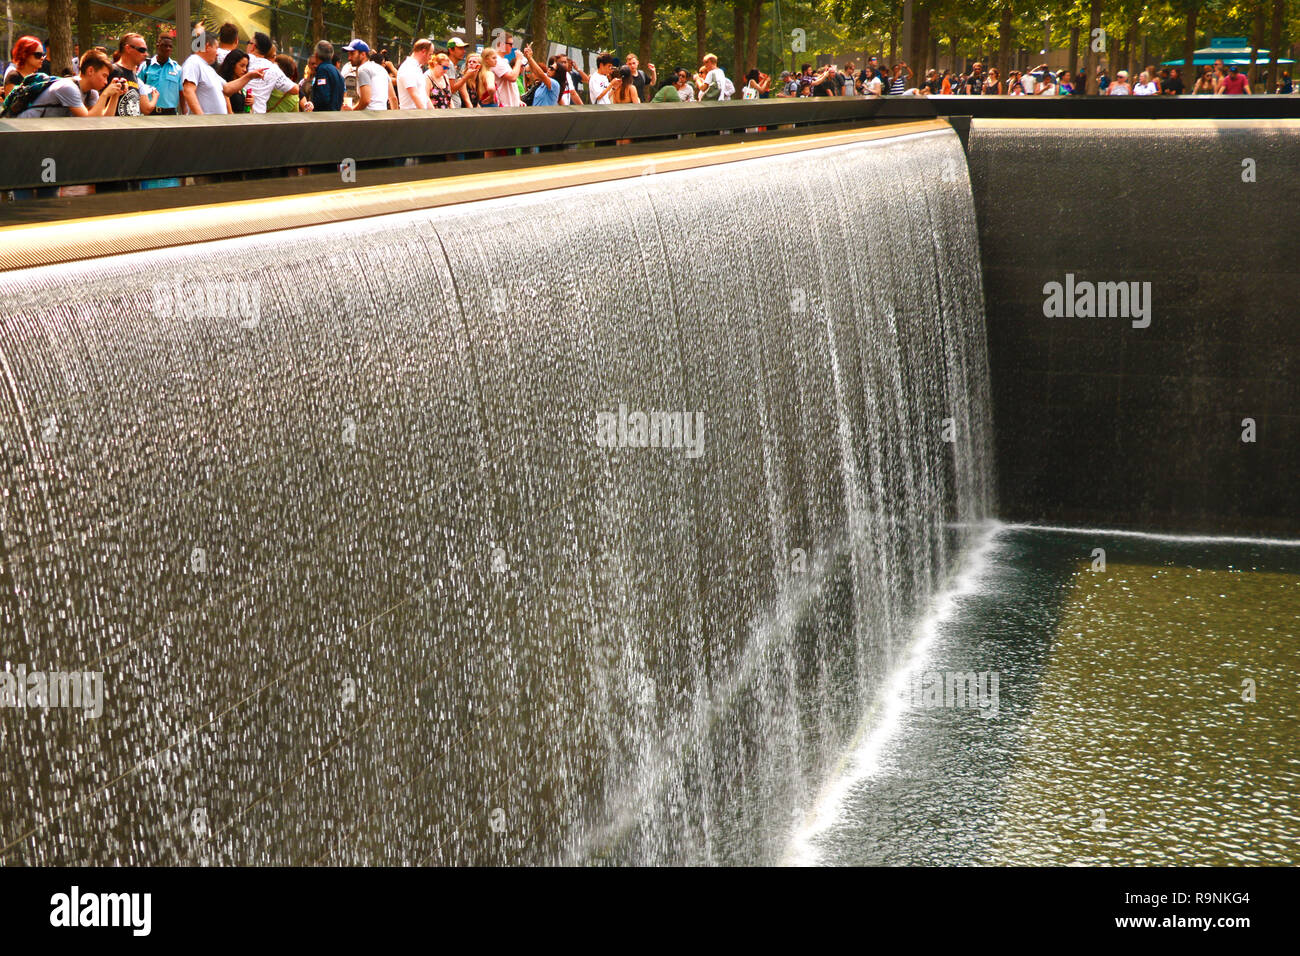 New York, USA - 2 septembre 2018 : Monument au World Trade Center Ground Zero Le mémorial a été inauguré sur la 10e anniversaire de la 11 Septembre 2001 Banque D'Images